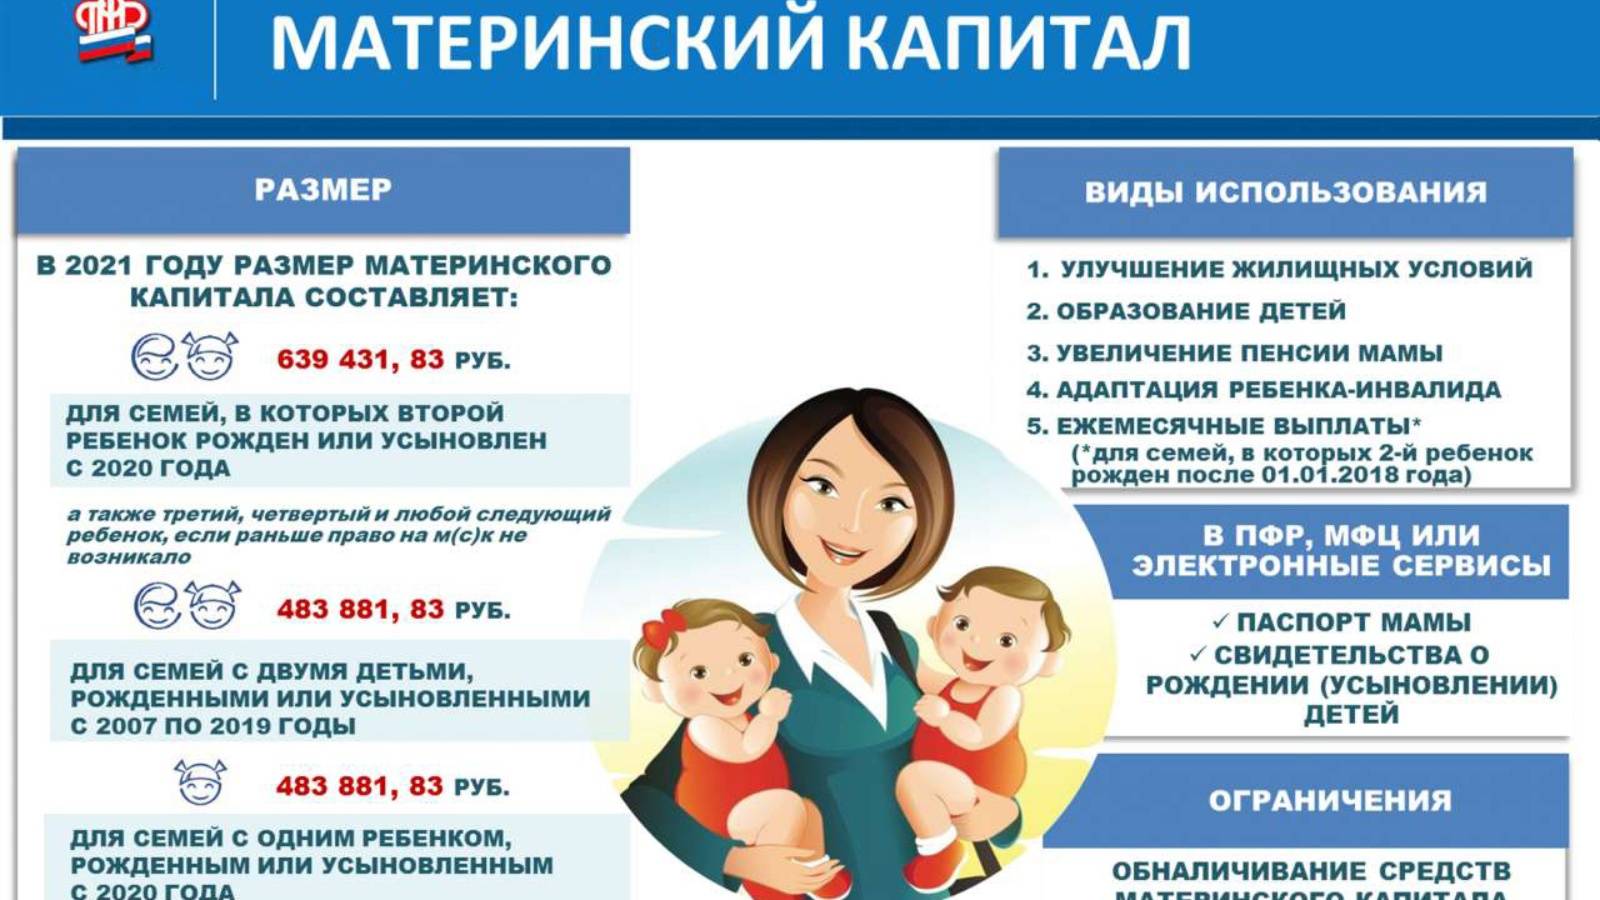 Ежемесячные выплаты из материнского капитала в 2020 году: как получать на второго ребенка до 3 лет - part 2021